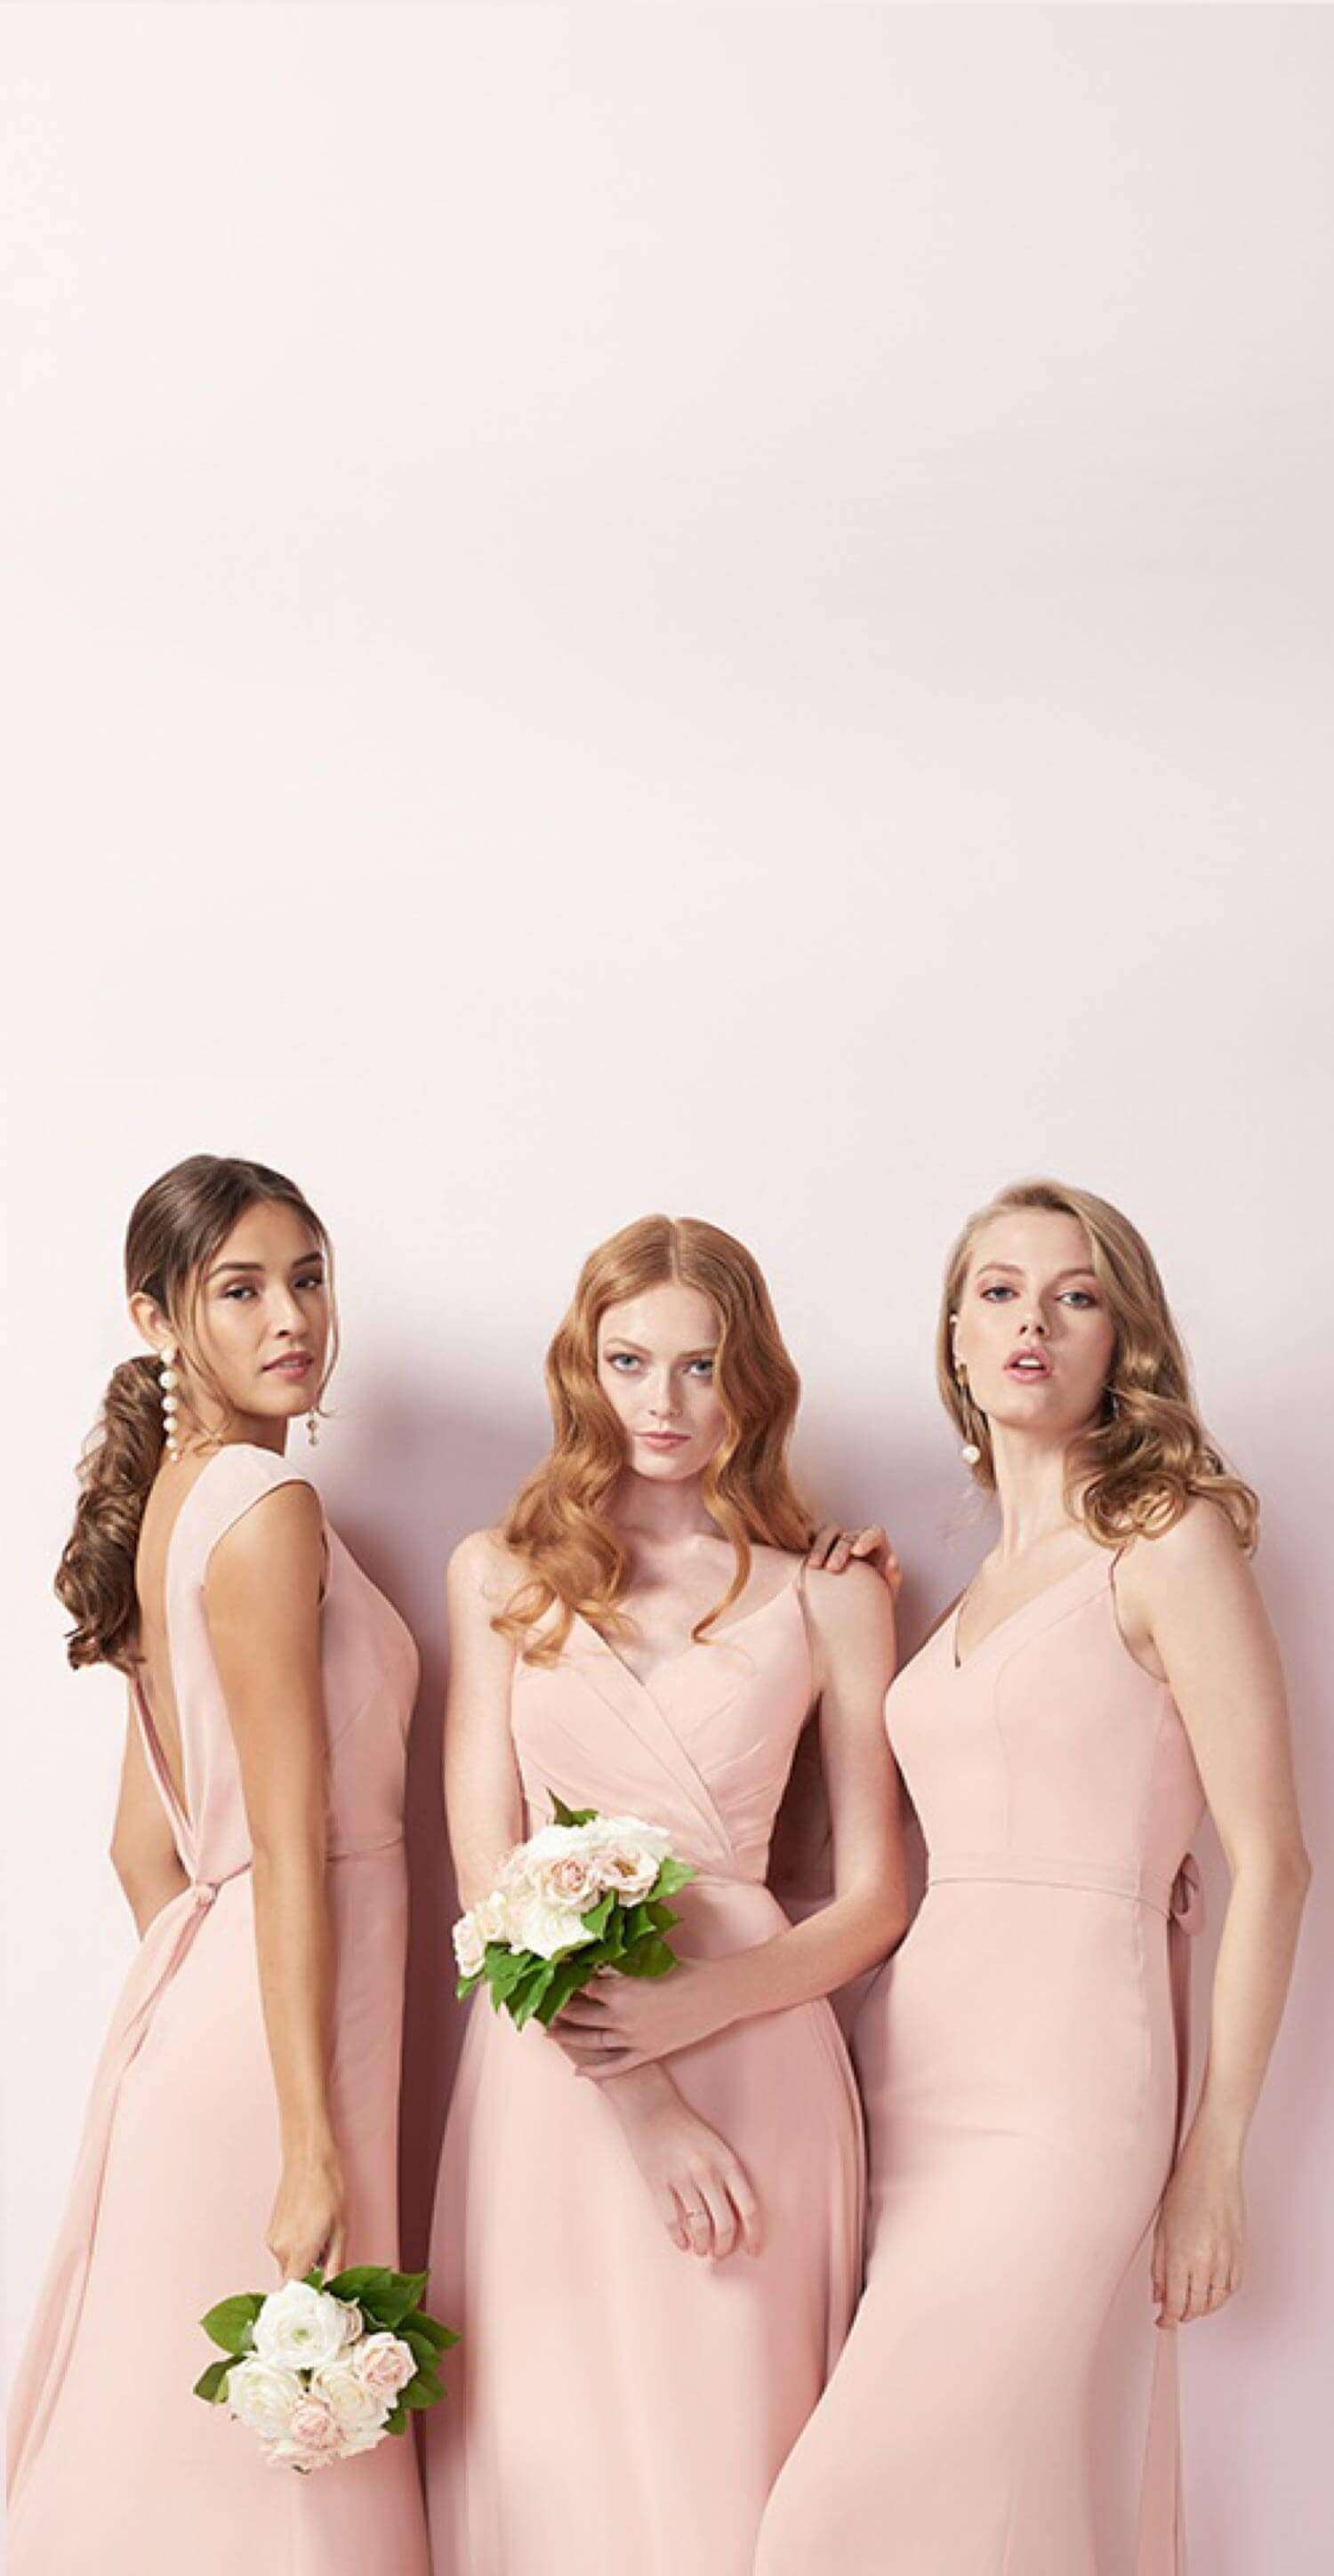 Models wearing pink dresses. Mobile Image